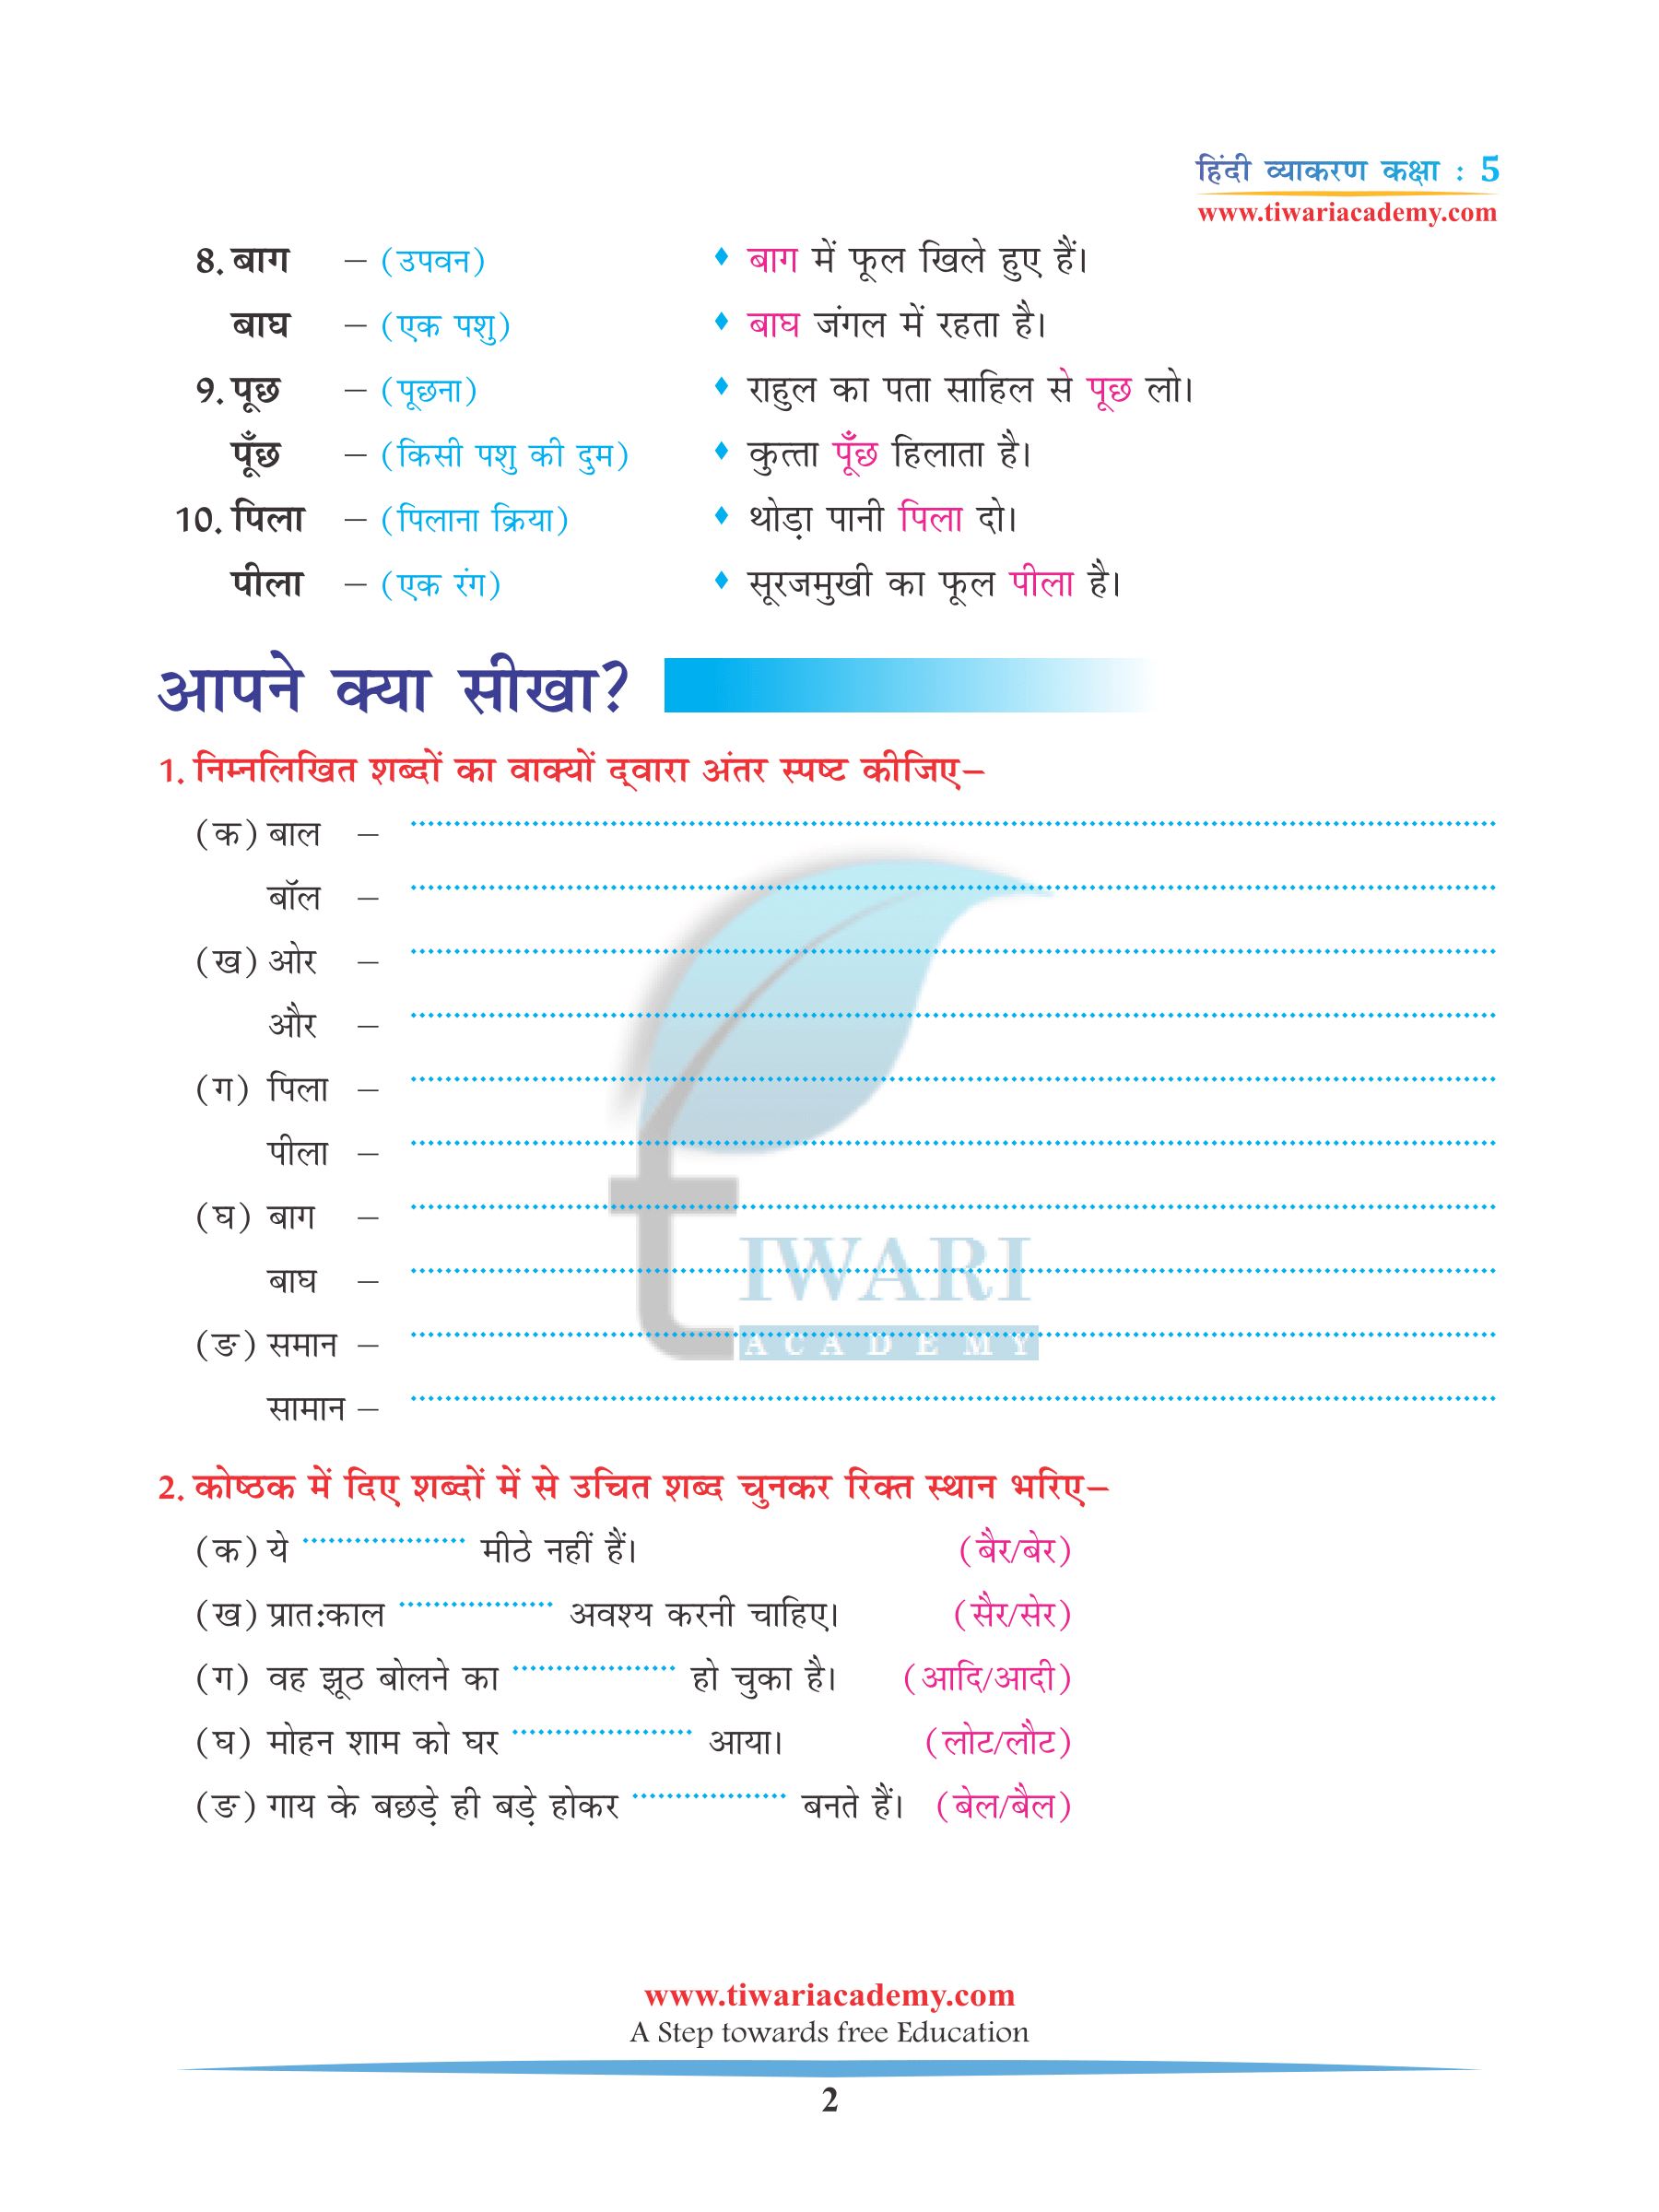 CBSE NCERT Solutions for Class 5 Hindi Grammar Chapter 15